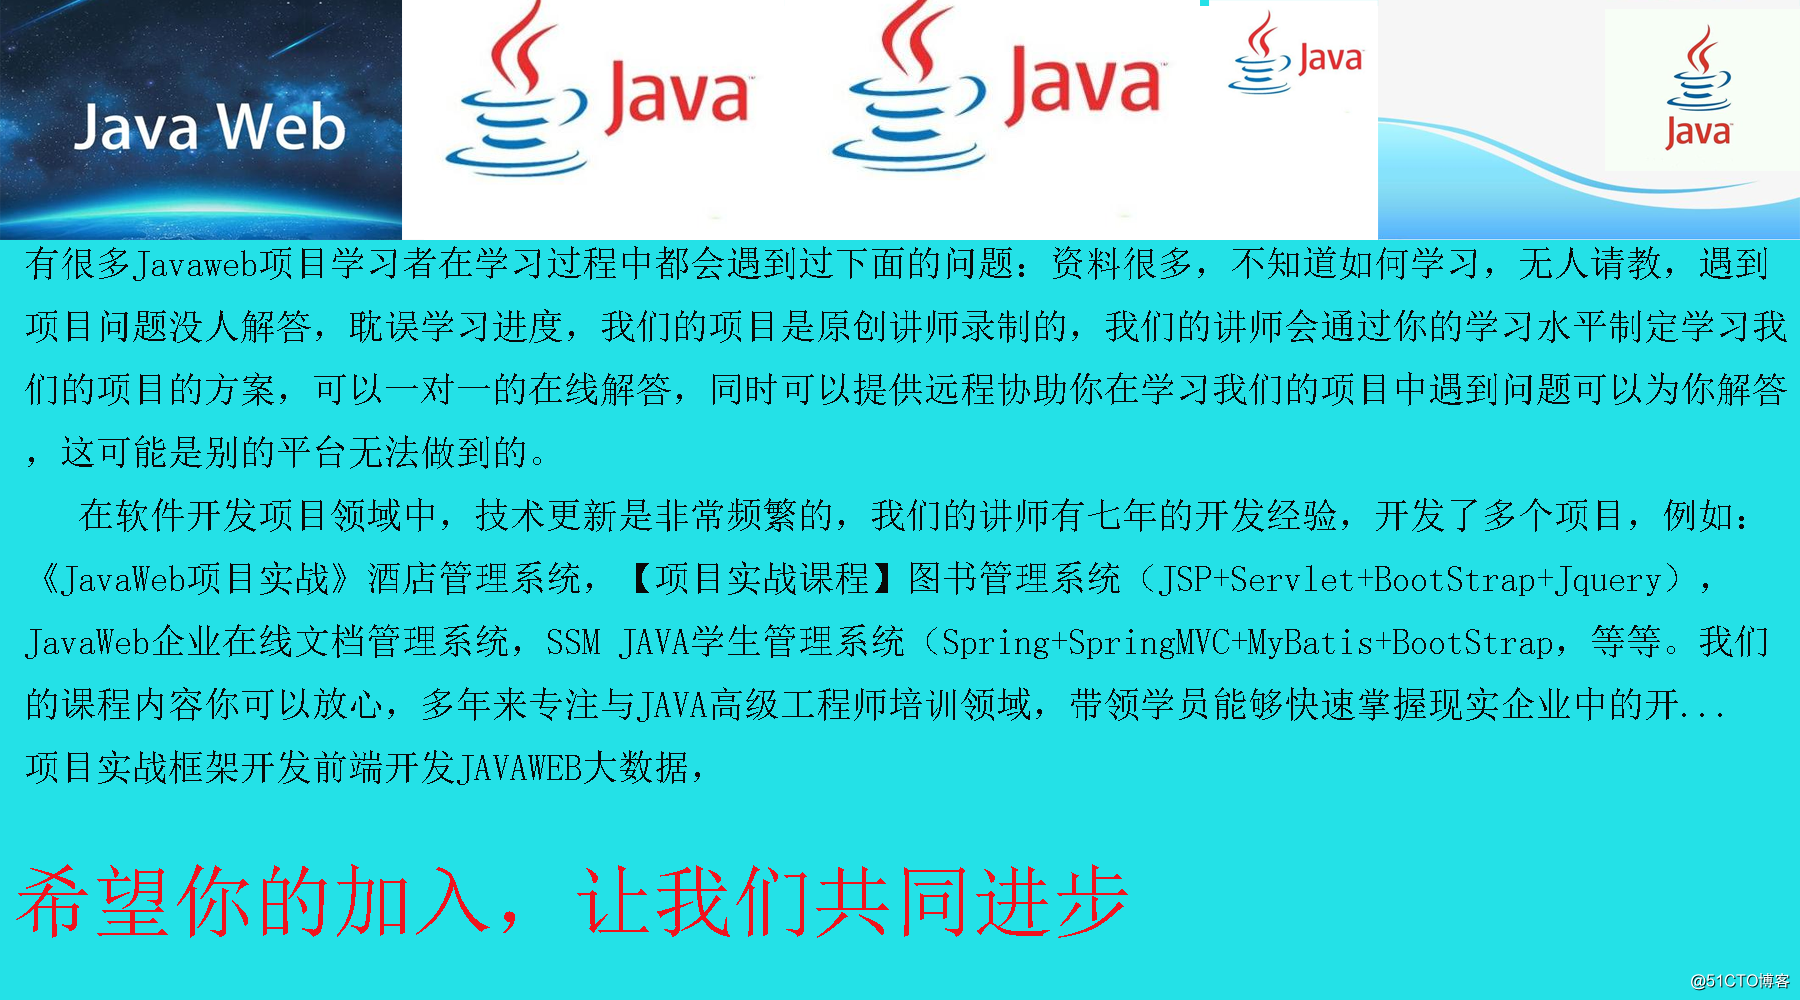 JavaWeb毕业生就业招聘管理系统